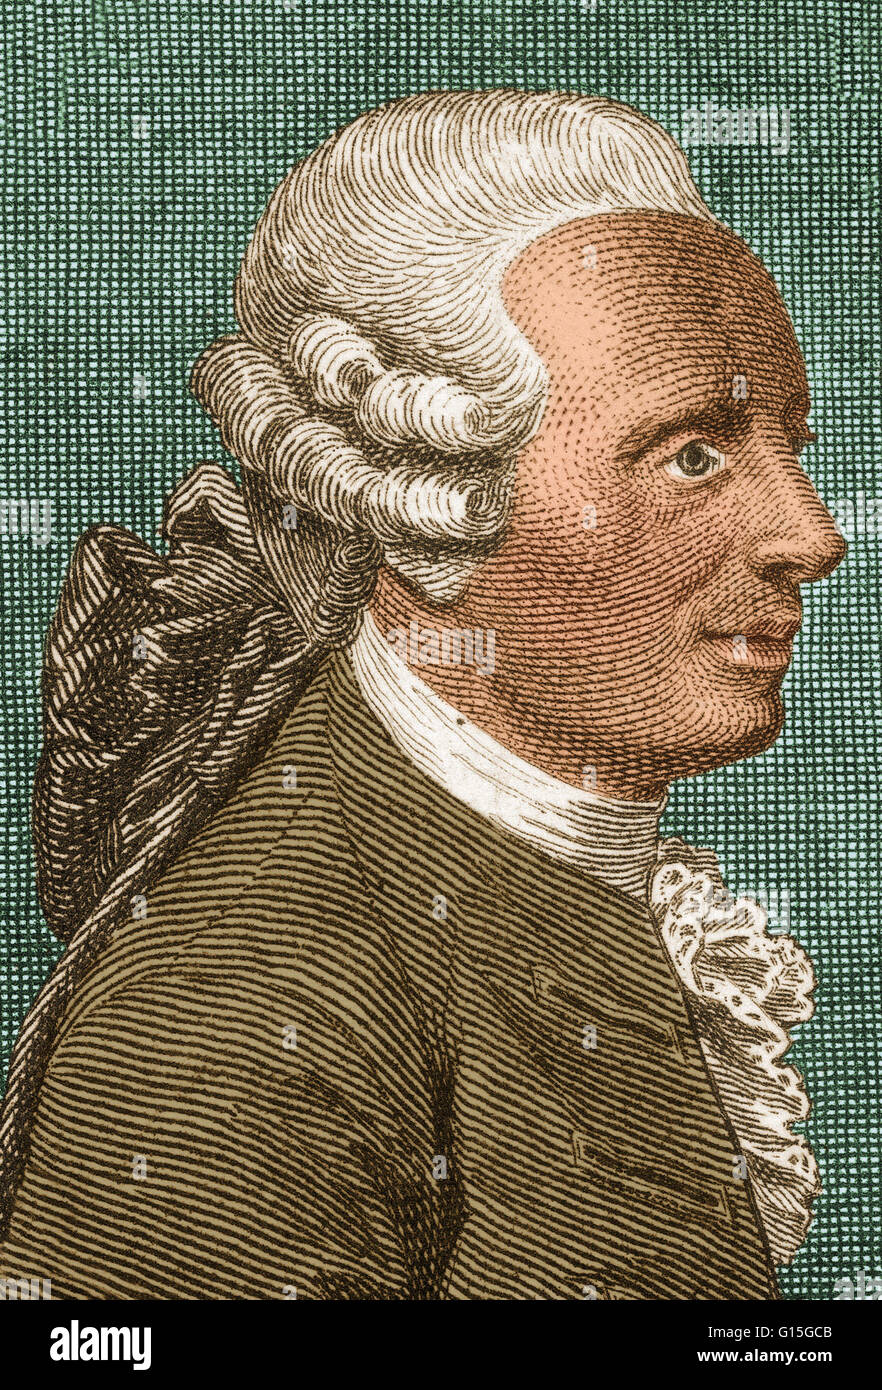 Jean-Baptiste le Rond d ' Alembert (16. November 1717 - 29. Oktober 1783) war ein französischer Mathematiker, Mechaniker, Physiker, Philosoph, Musiktheoretiker und Co-Editor (für Mathematik und Naturwissenschaften) mit Denis Diderot der Encyclopédie. Die d ' Alembert formul Stockfoto